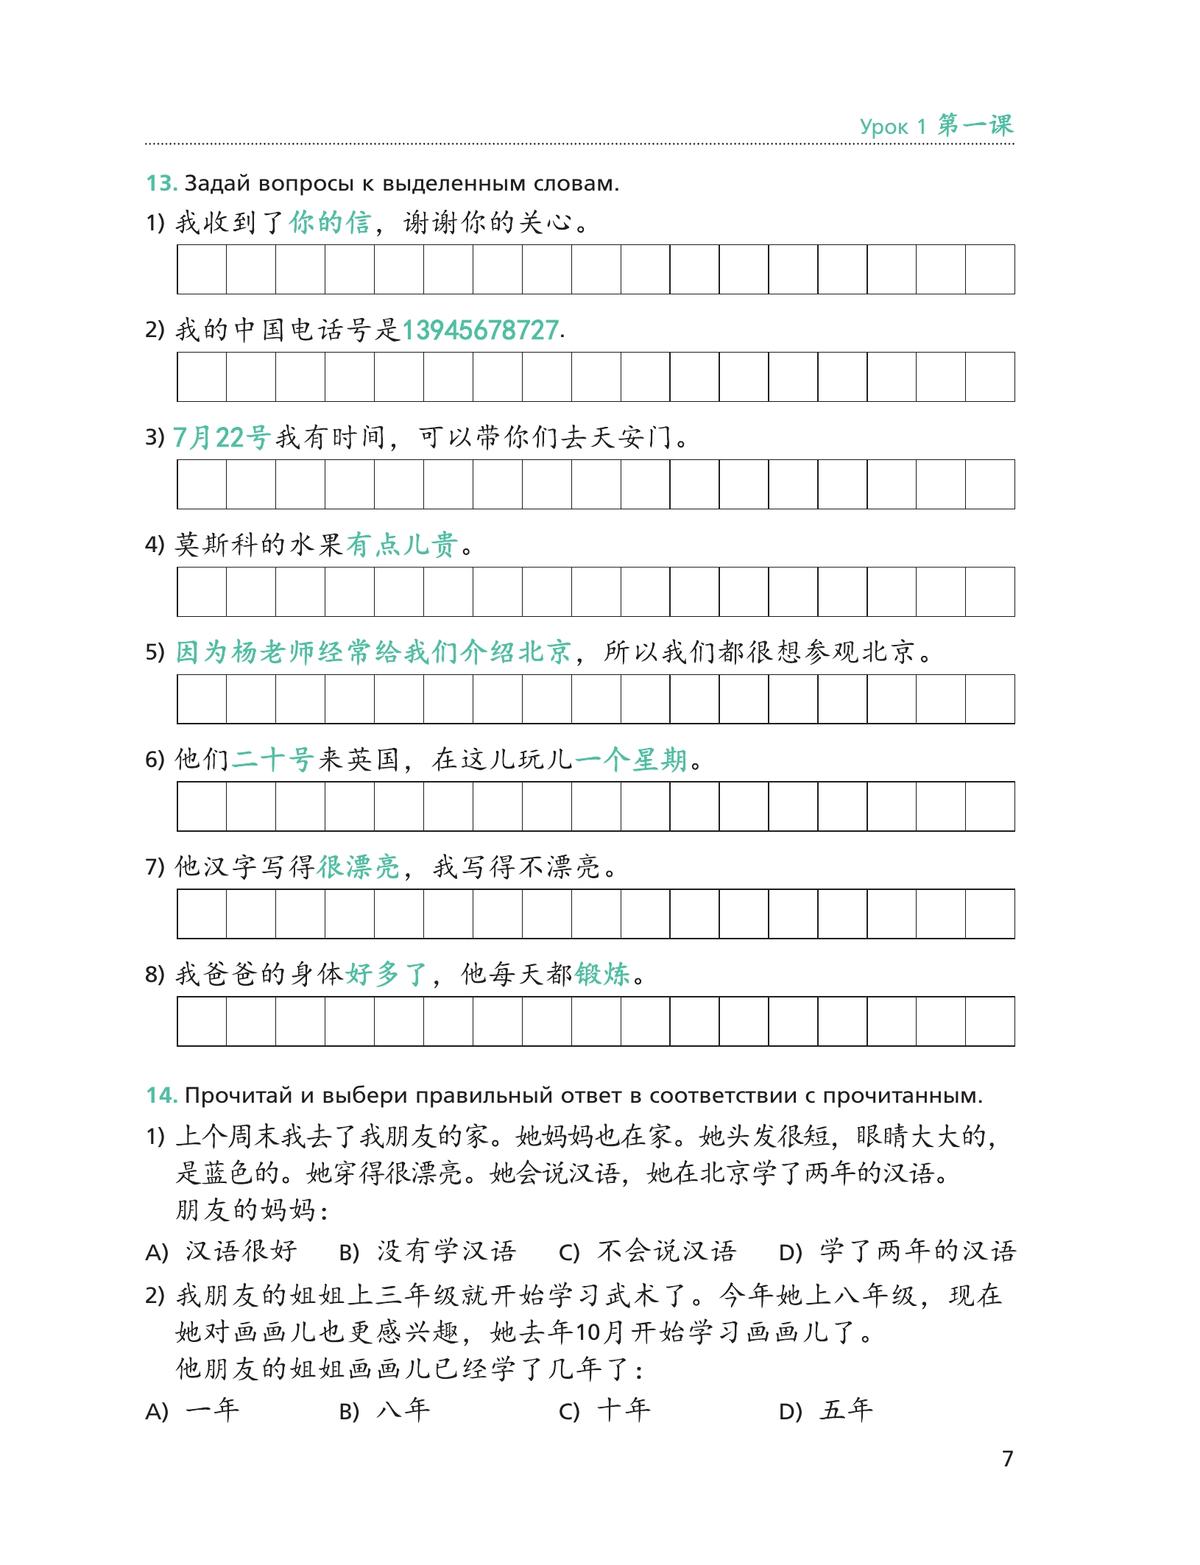 Китайский язык. Второй иностранный язык. Рабочая тетрадь. 8 класс 8